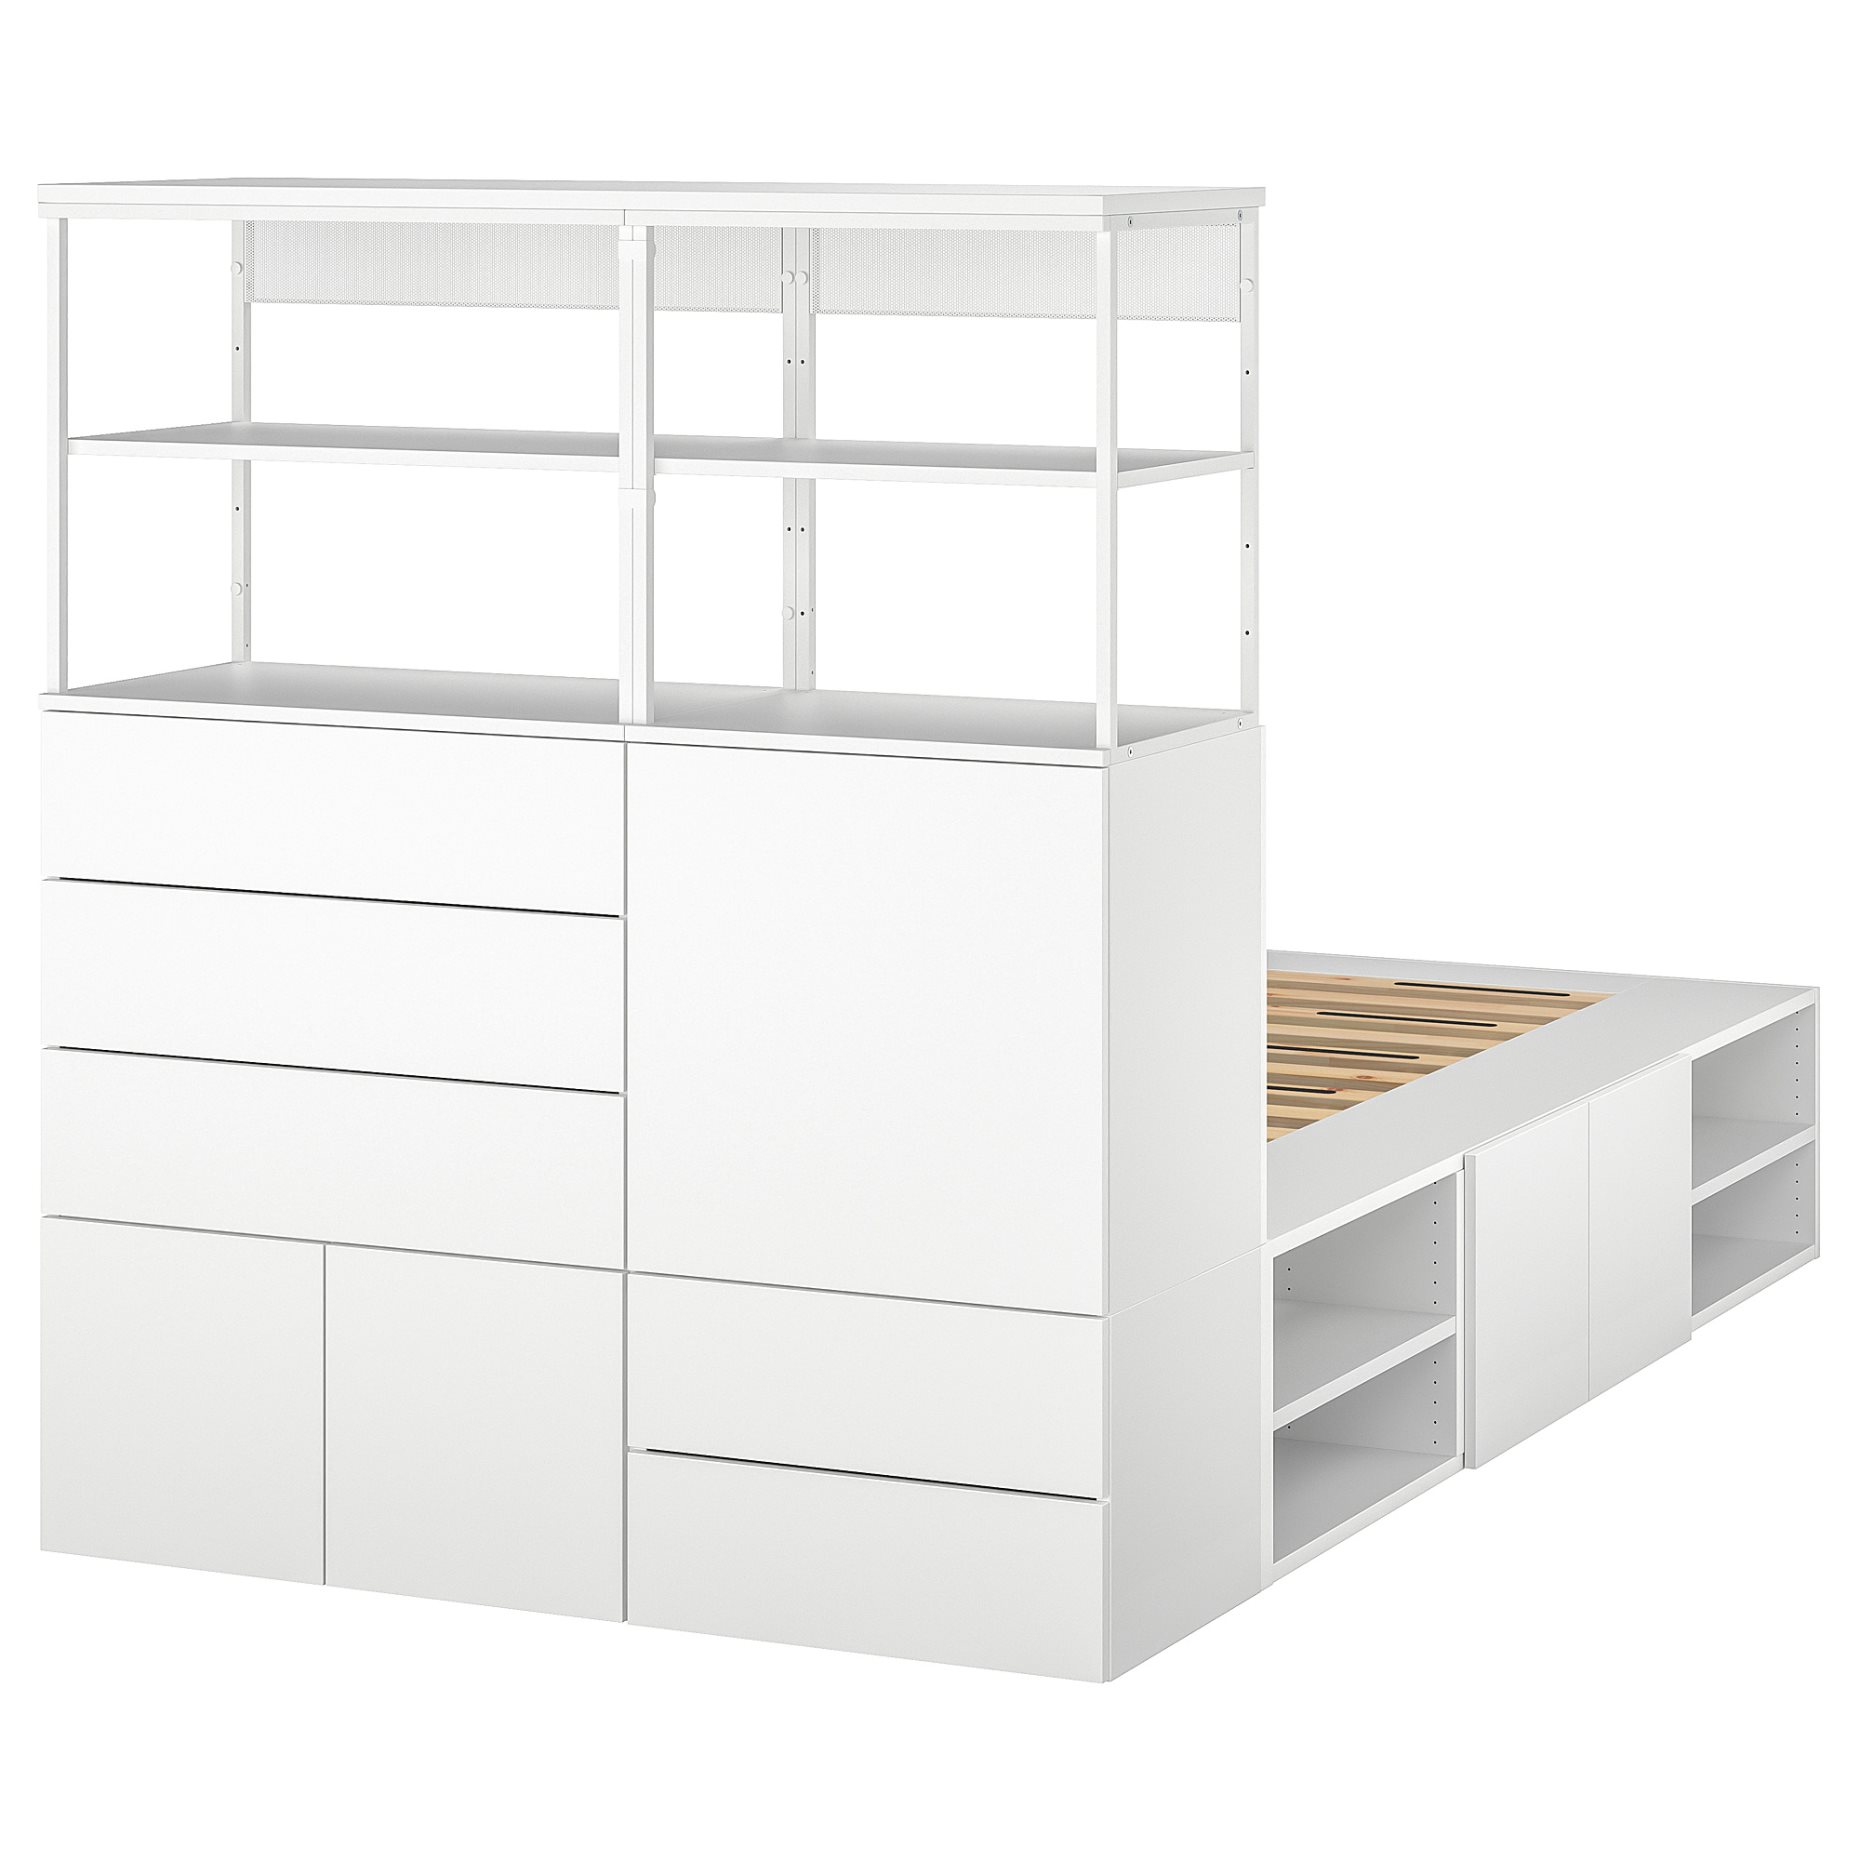 PLATSA, bed with 5 door/5 drawers, 140x244x163 cm, 993.253.83